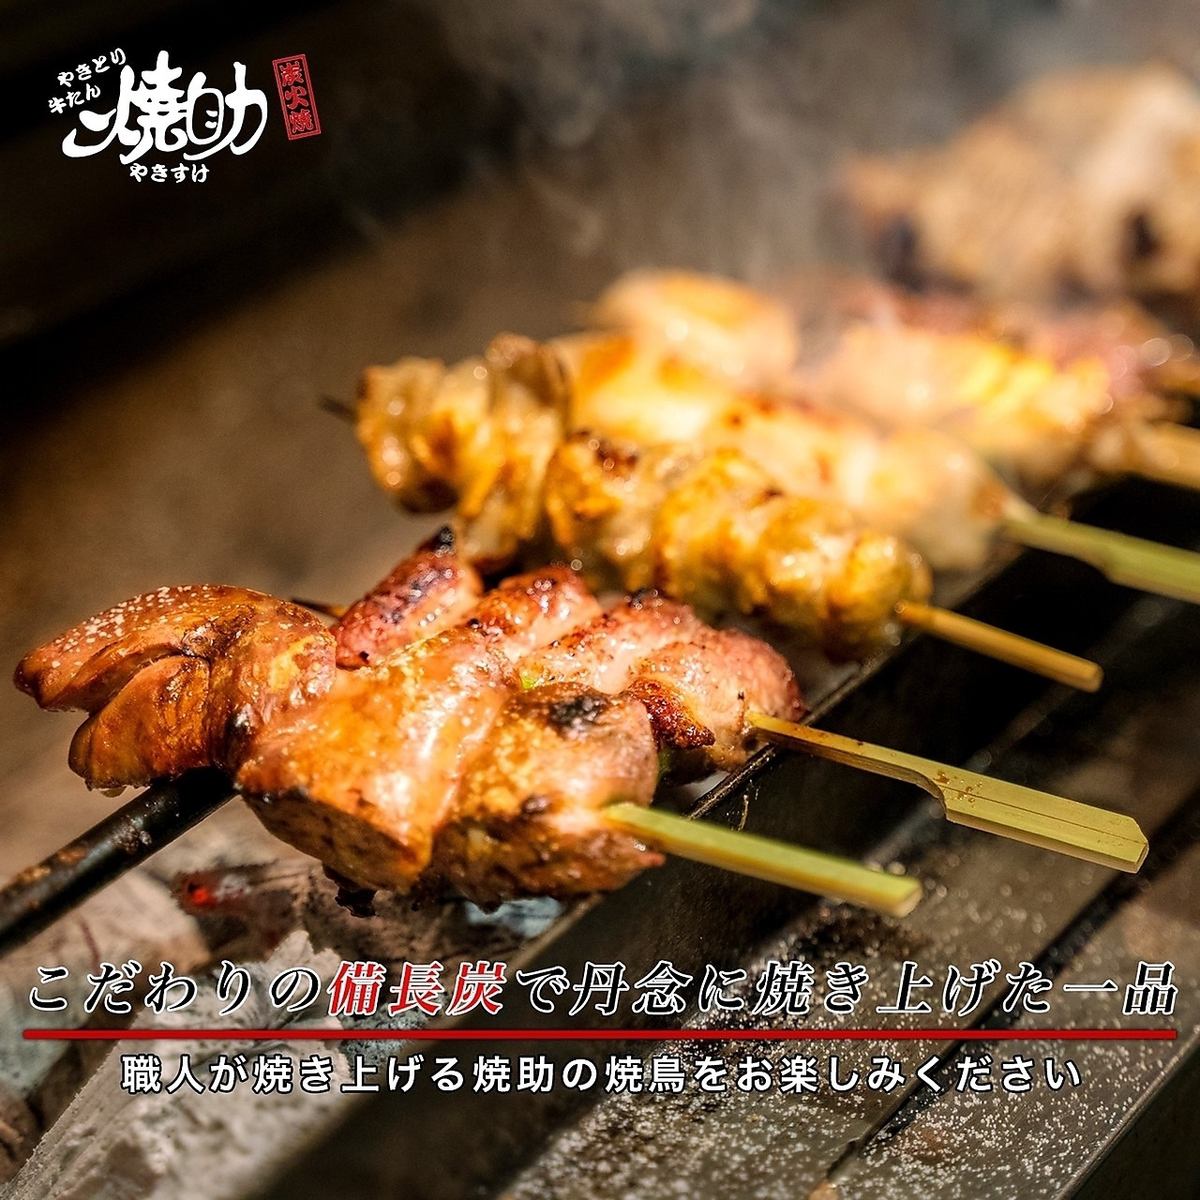 烤鸡肉串和牛舌非常棒；提供带horigotatsu（下沉式被炉桌）和私人餐桌的私人房间；允许吸烟！